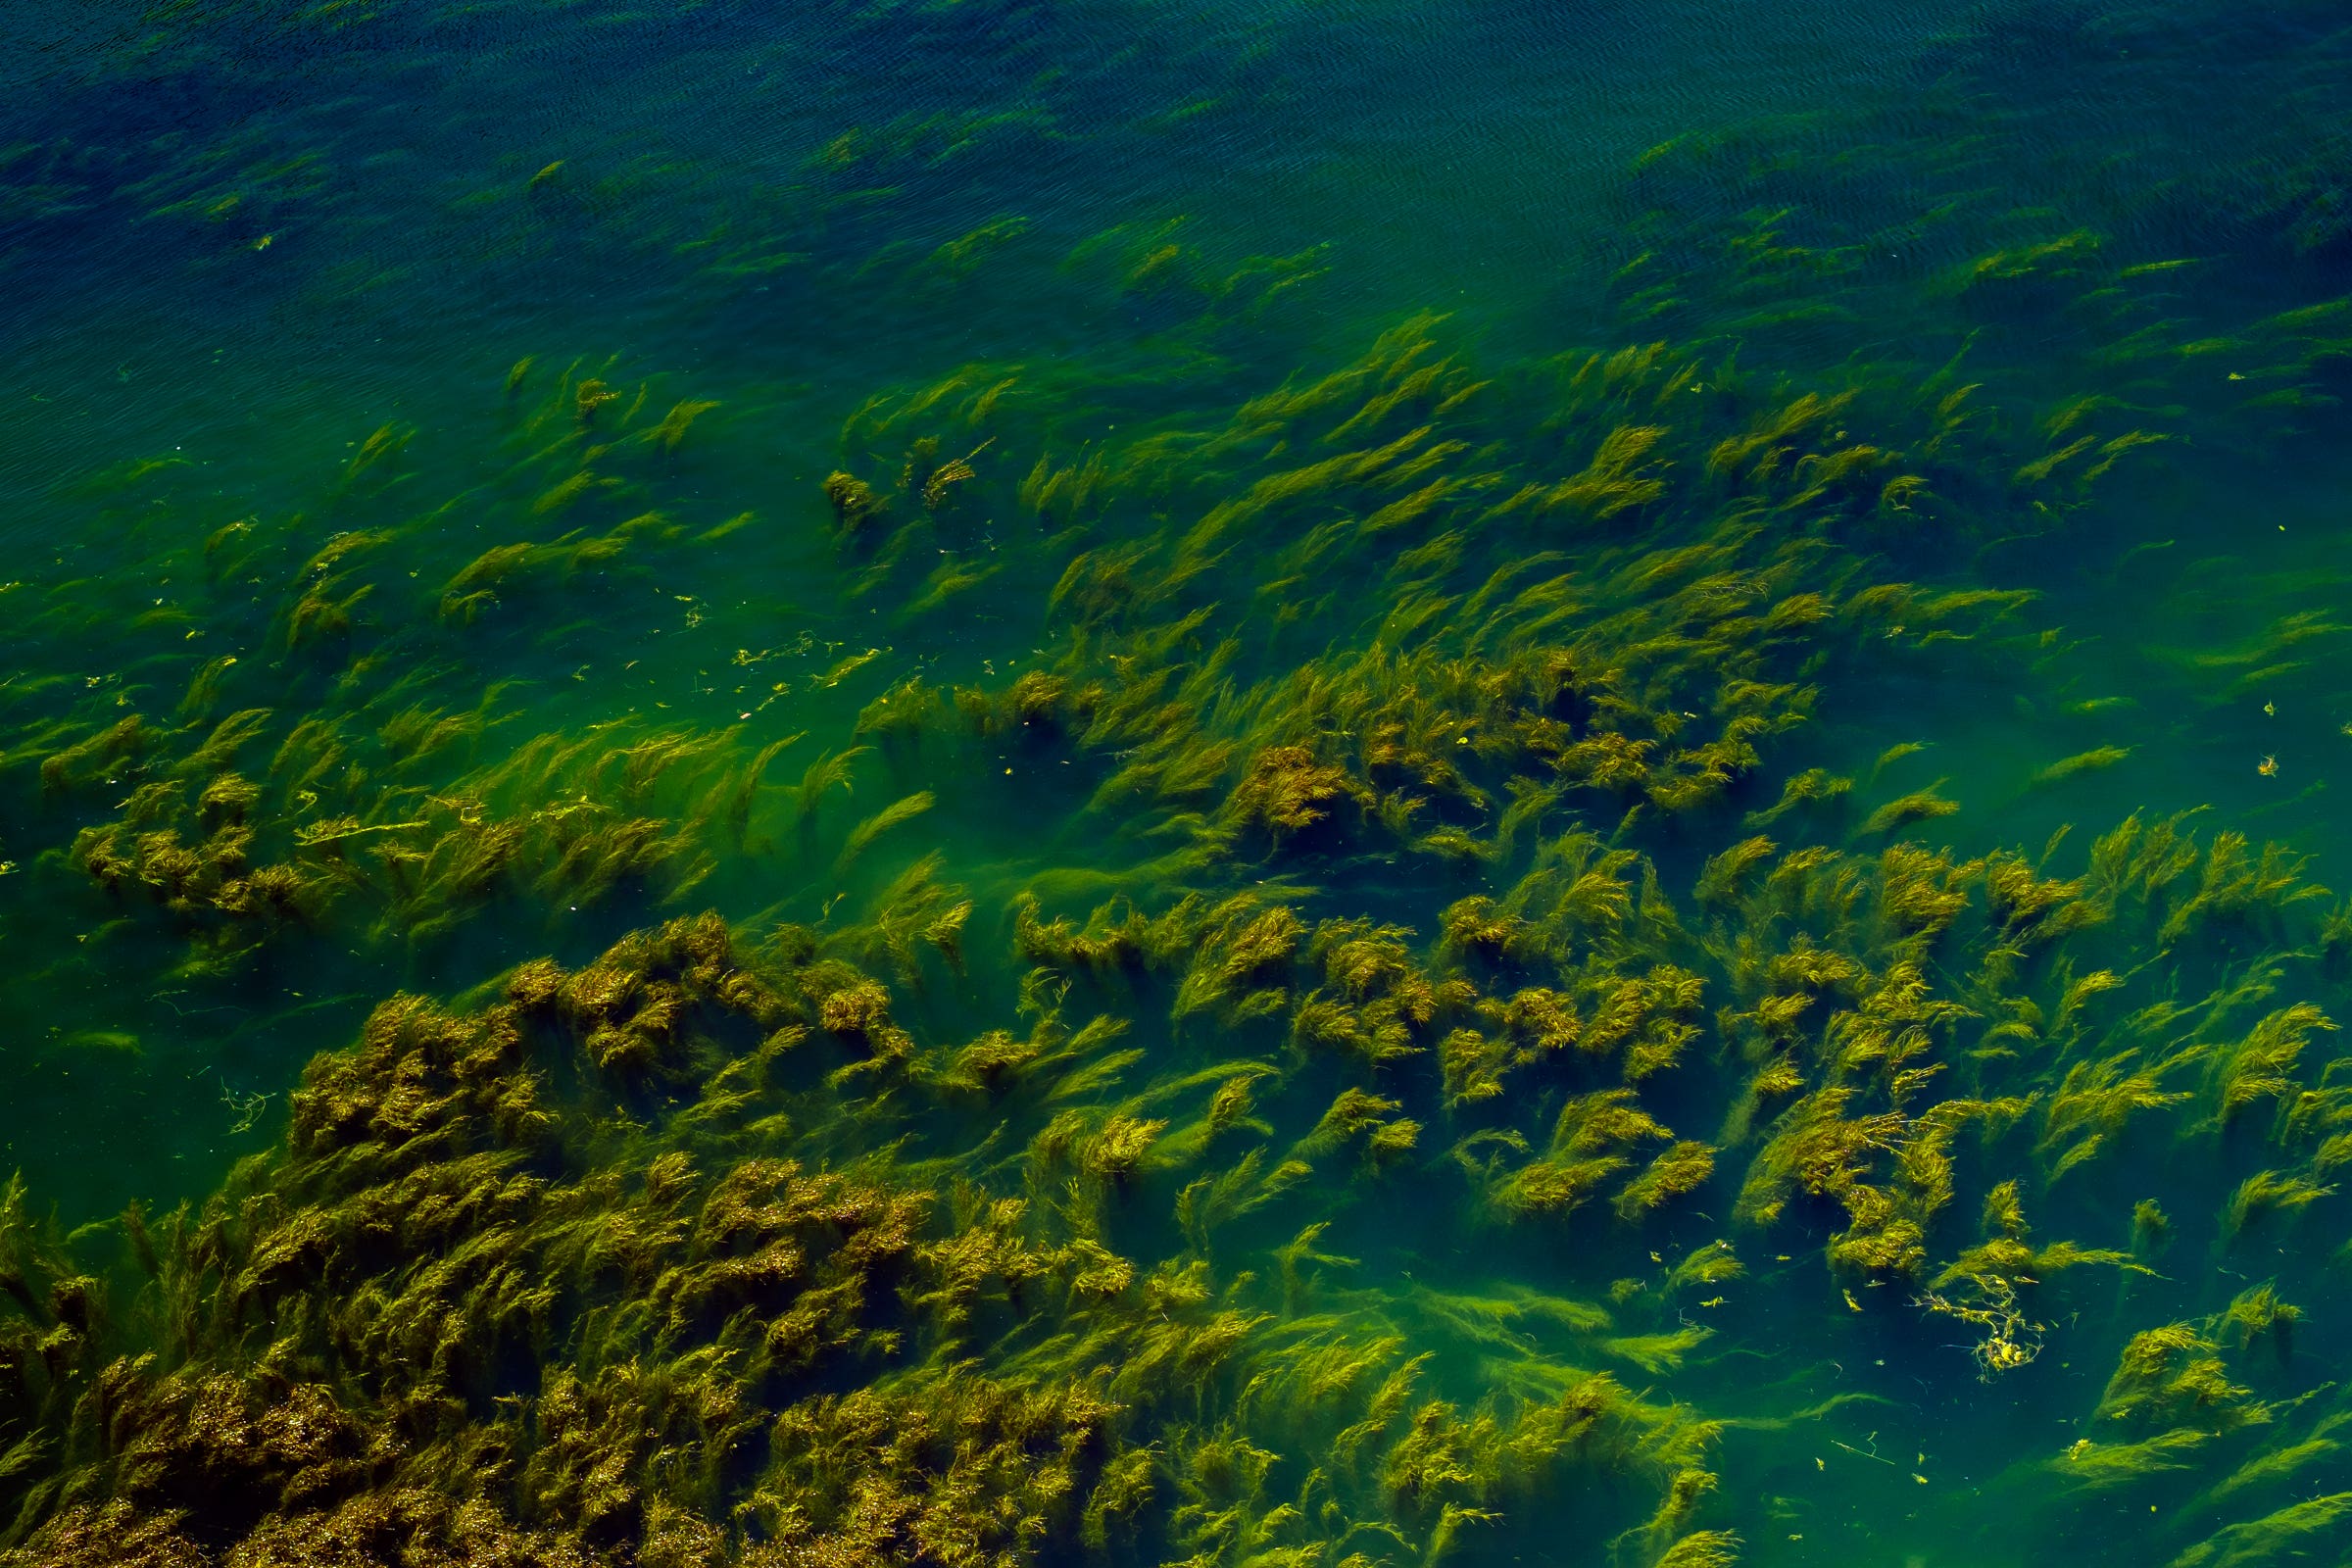 Die Abbildung zeigt die Fotografie "Algen" aus dem Jahr 2015.